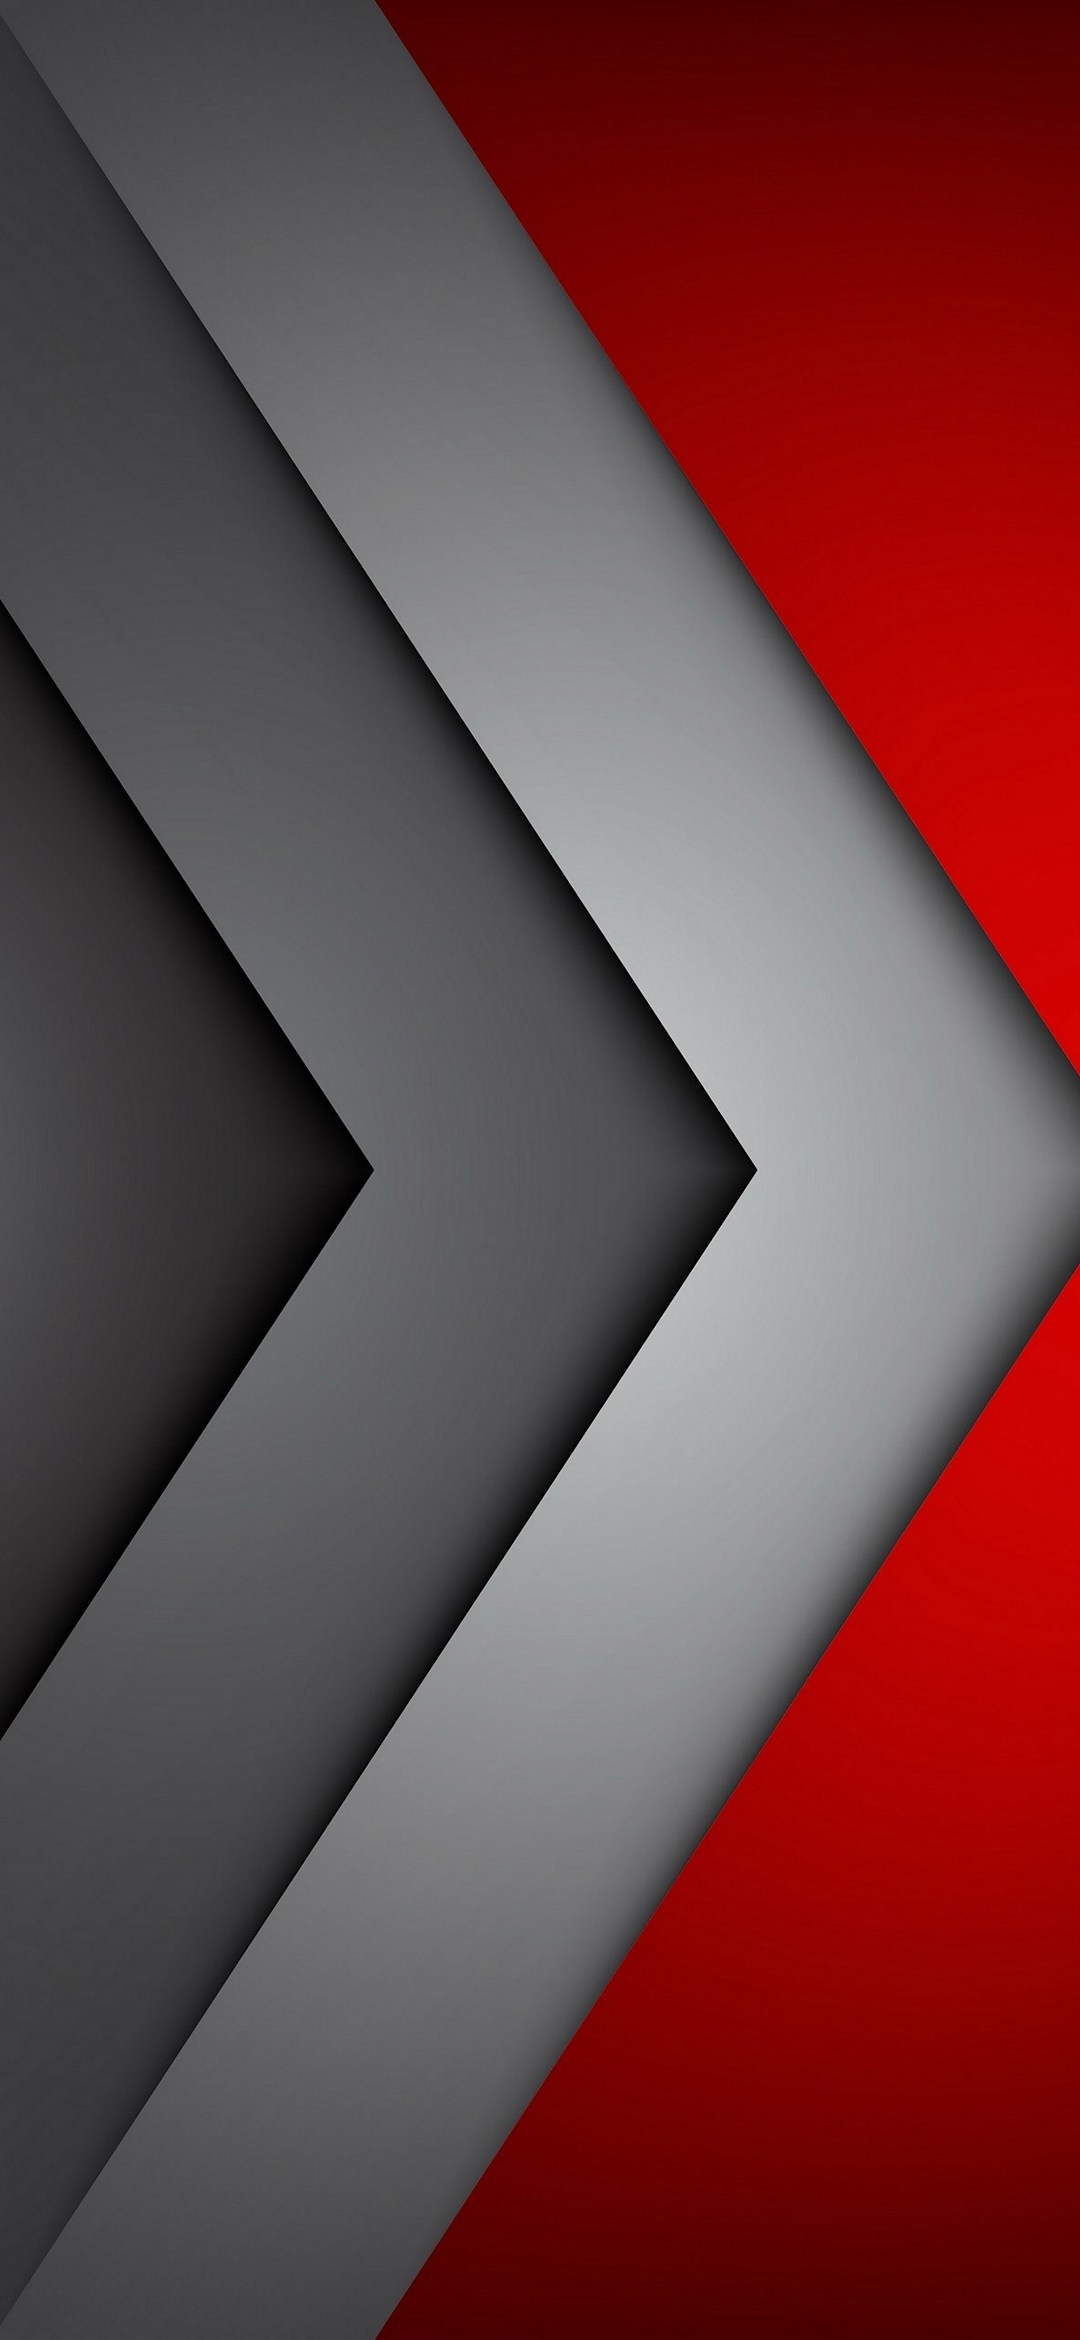 赤 黒 灰色のグラデーション Google Pixel 5 Android スマホ壁紙 待ち受け スマラン